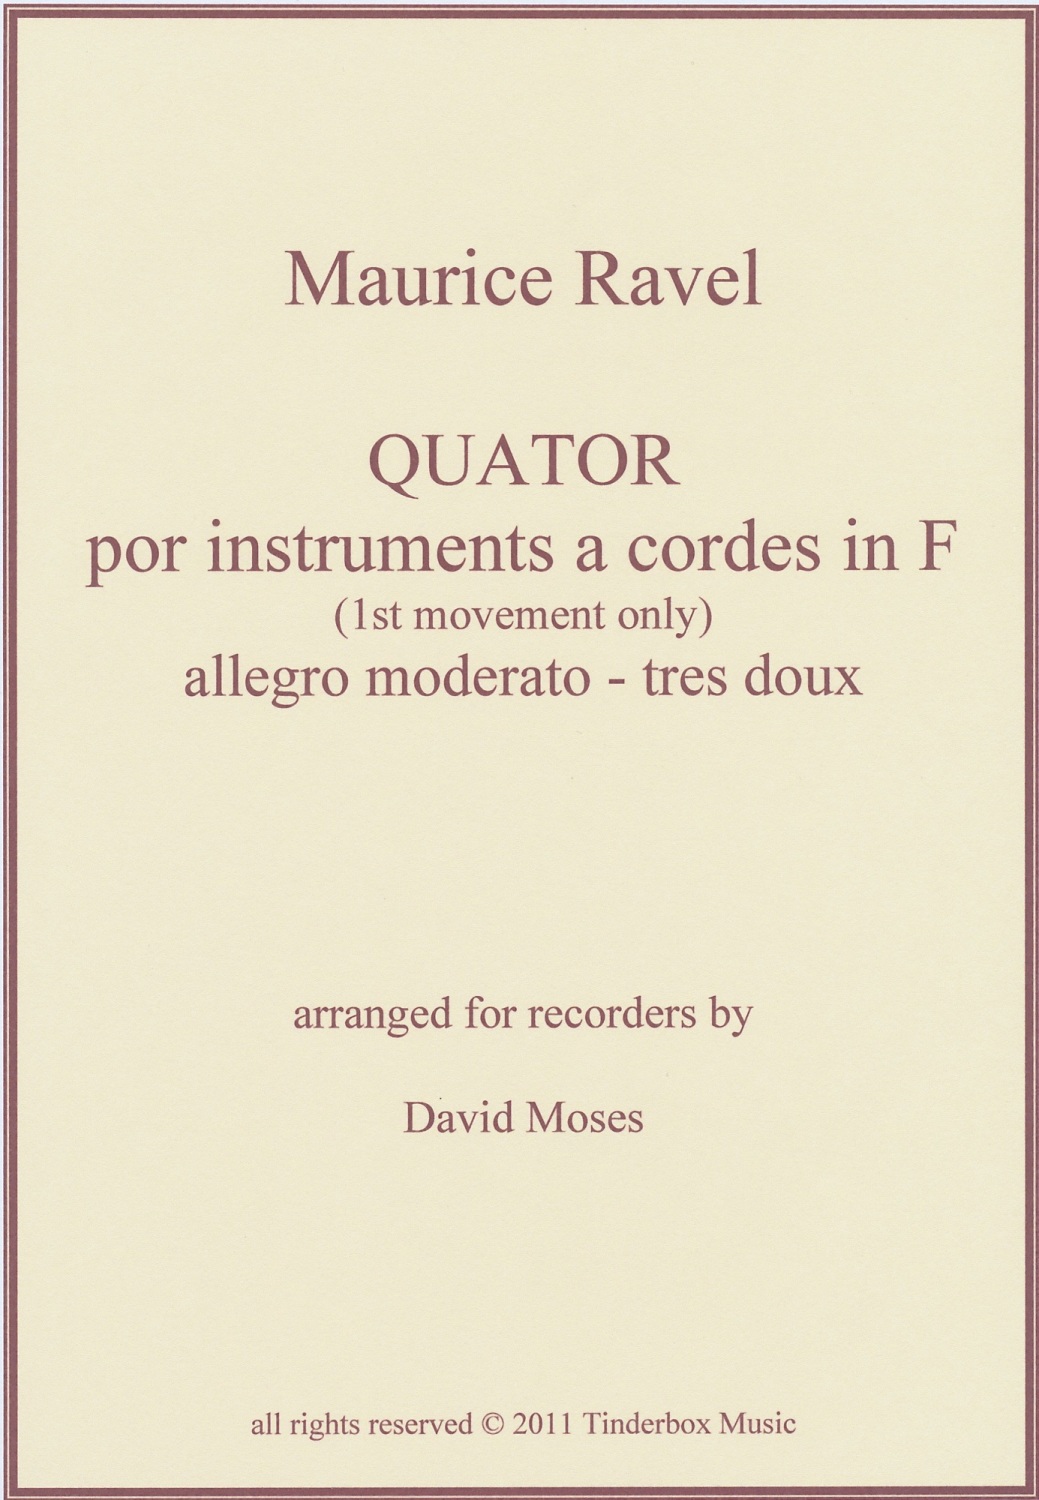 Ravel String Quartet in F (1st mvt.)